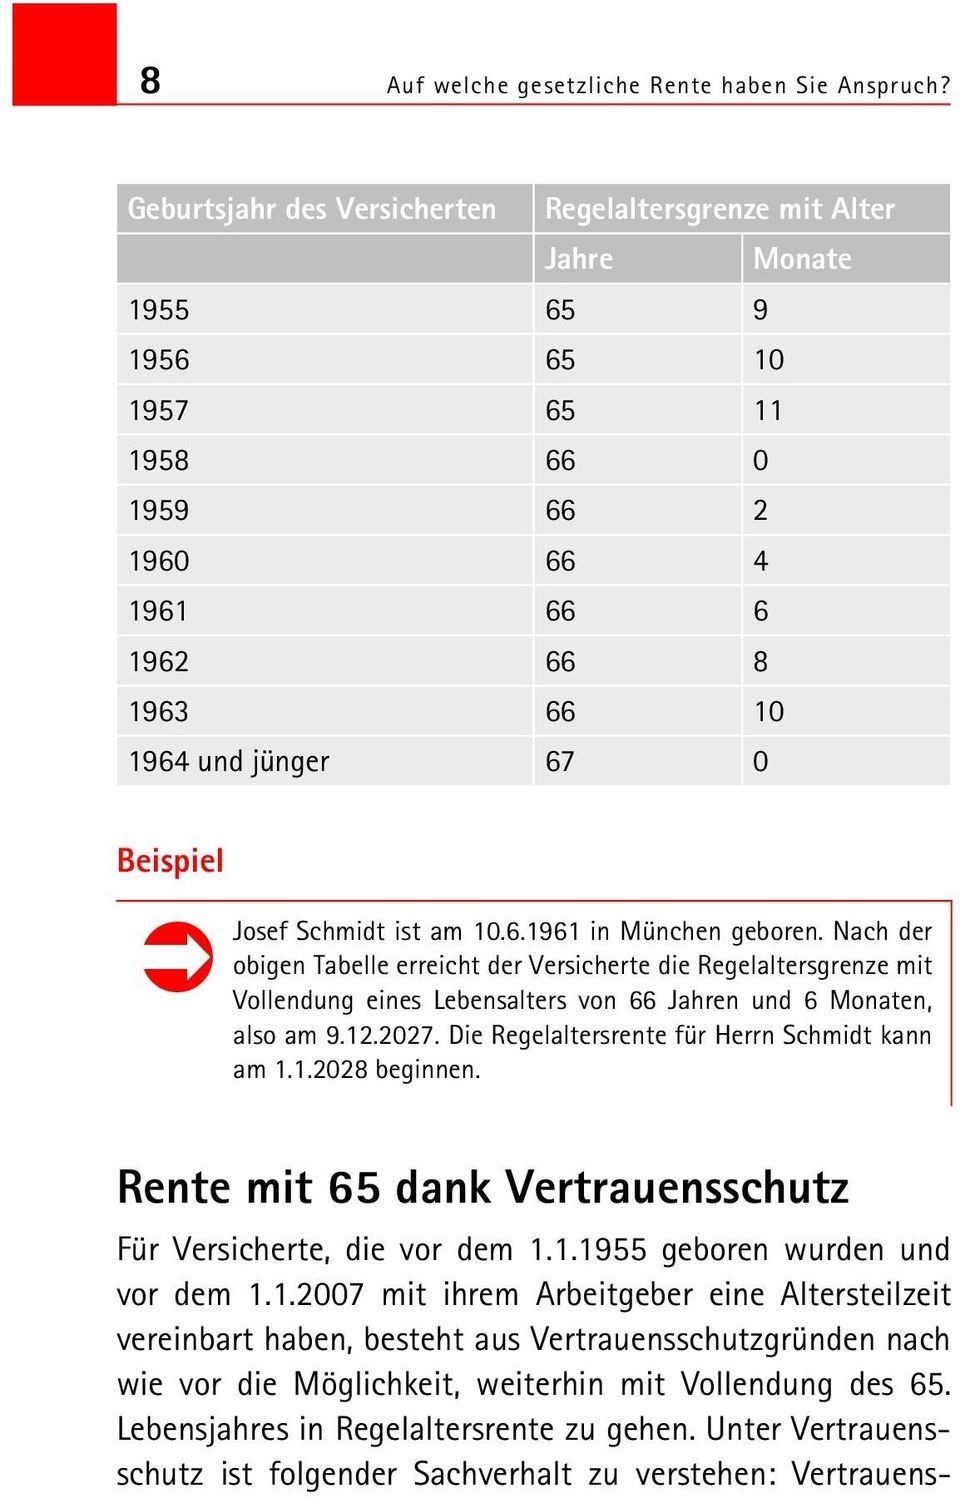 Schmidt ist am 10.6.1961 in München geboren. Nach der obigen Tabelle erreicht der Versicherte die Regelaltersgrenze mit Vollendung eines Lebensalters von 66 Jahren und 6 Monaten, also am 9.12.2027.